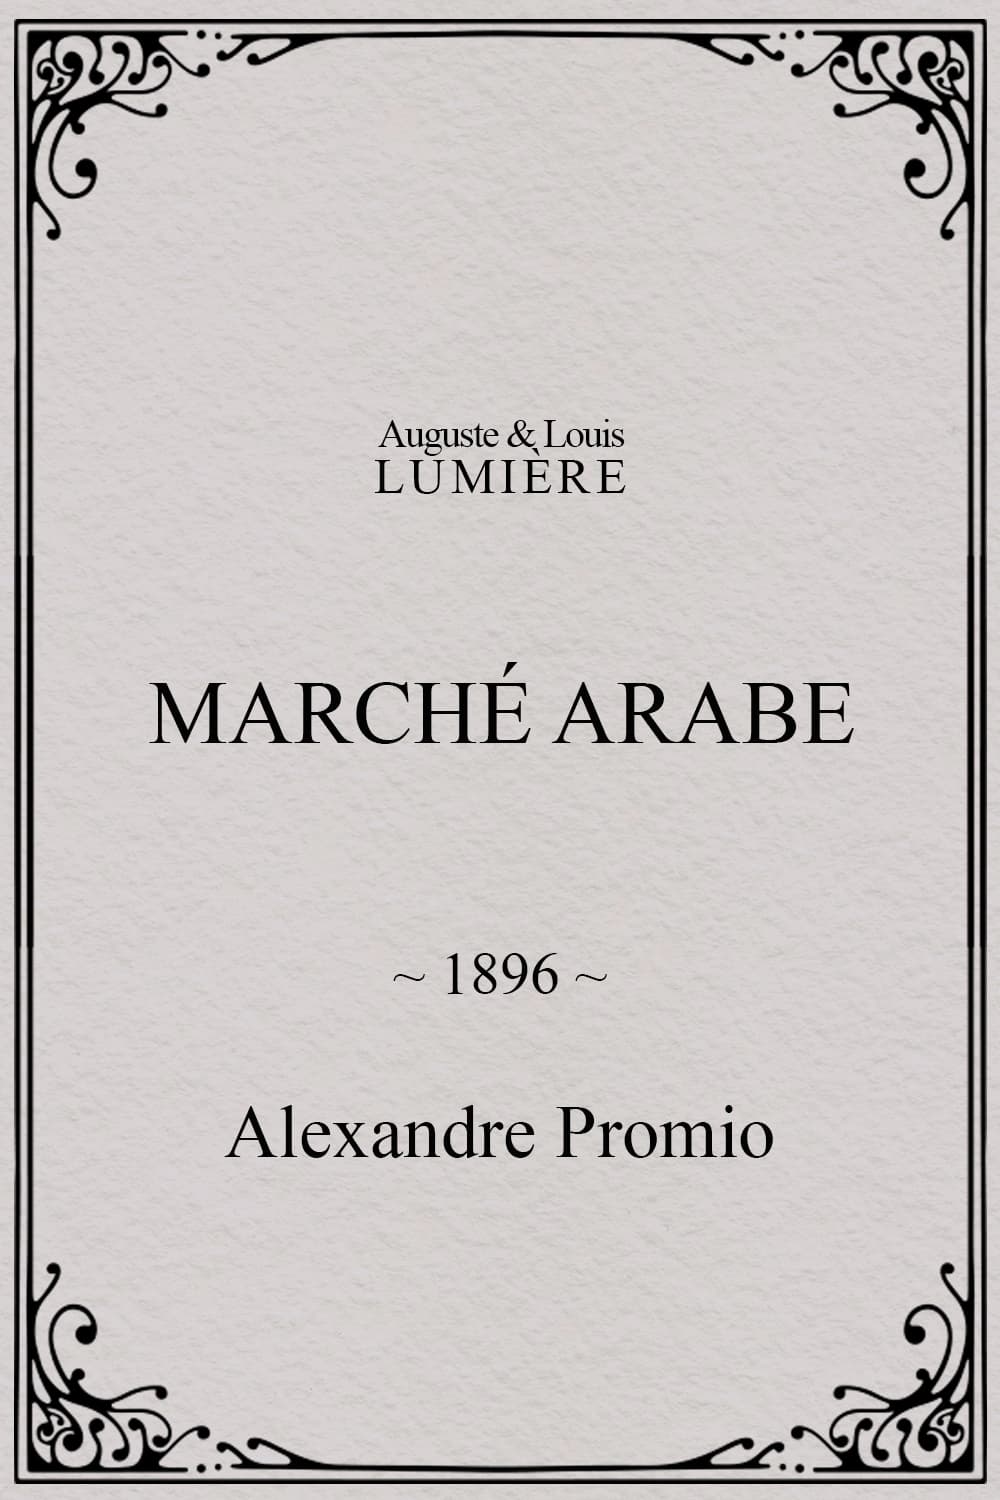 Marché arabe (1896)